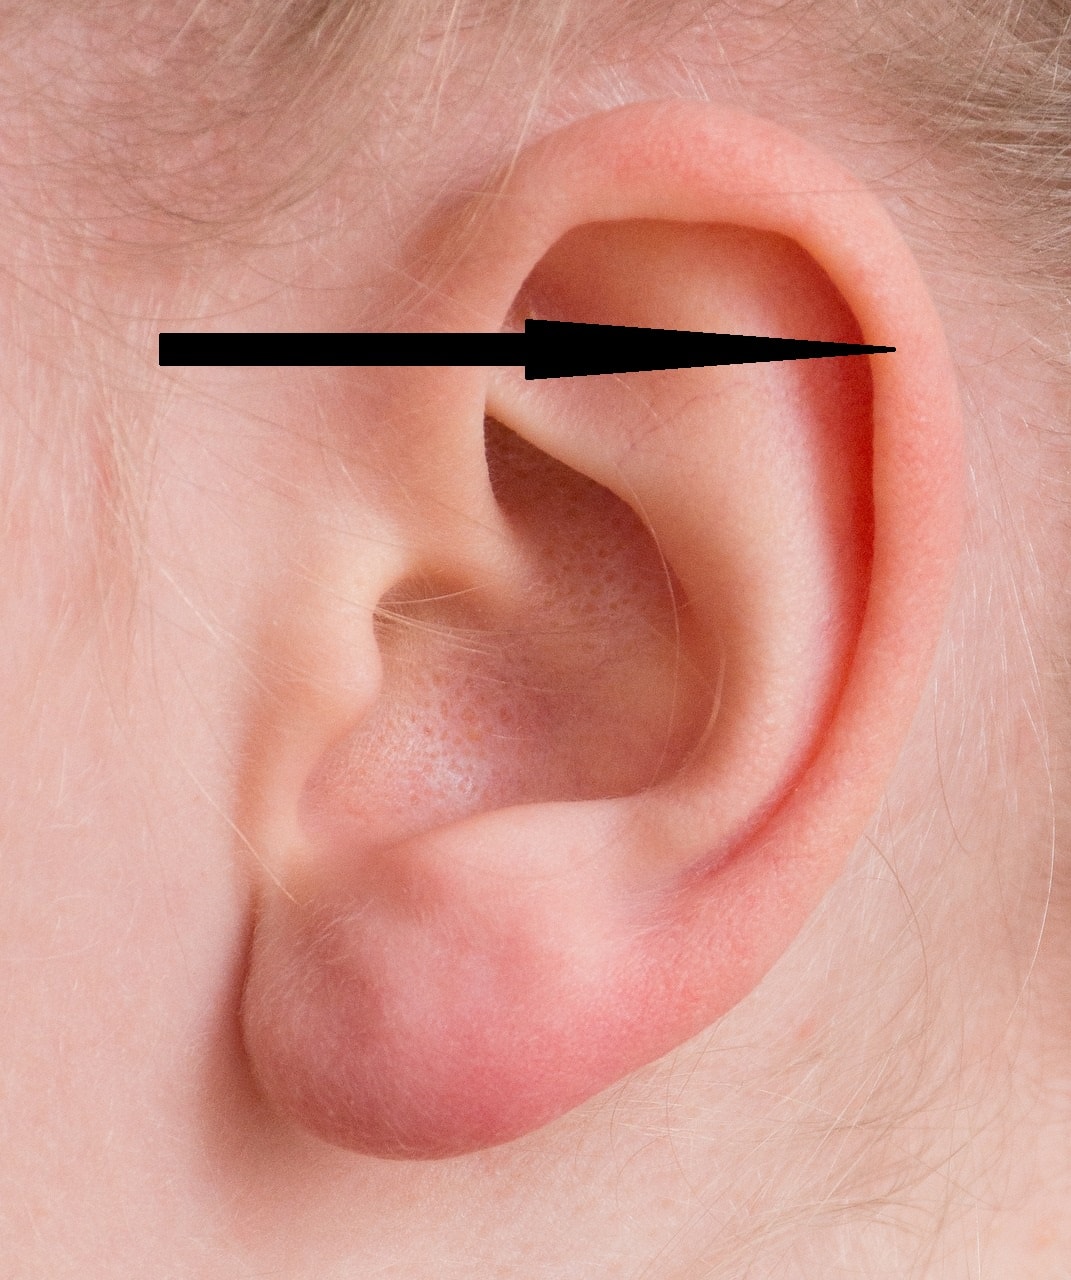 Helix piercing location on ear